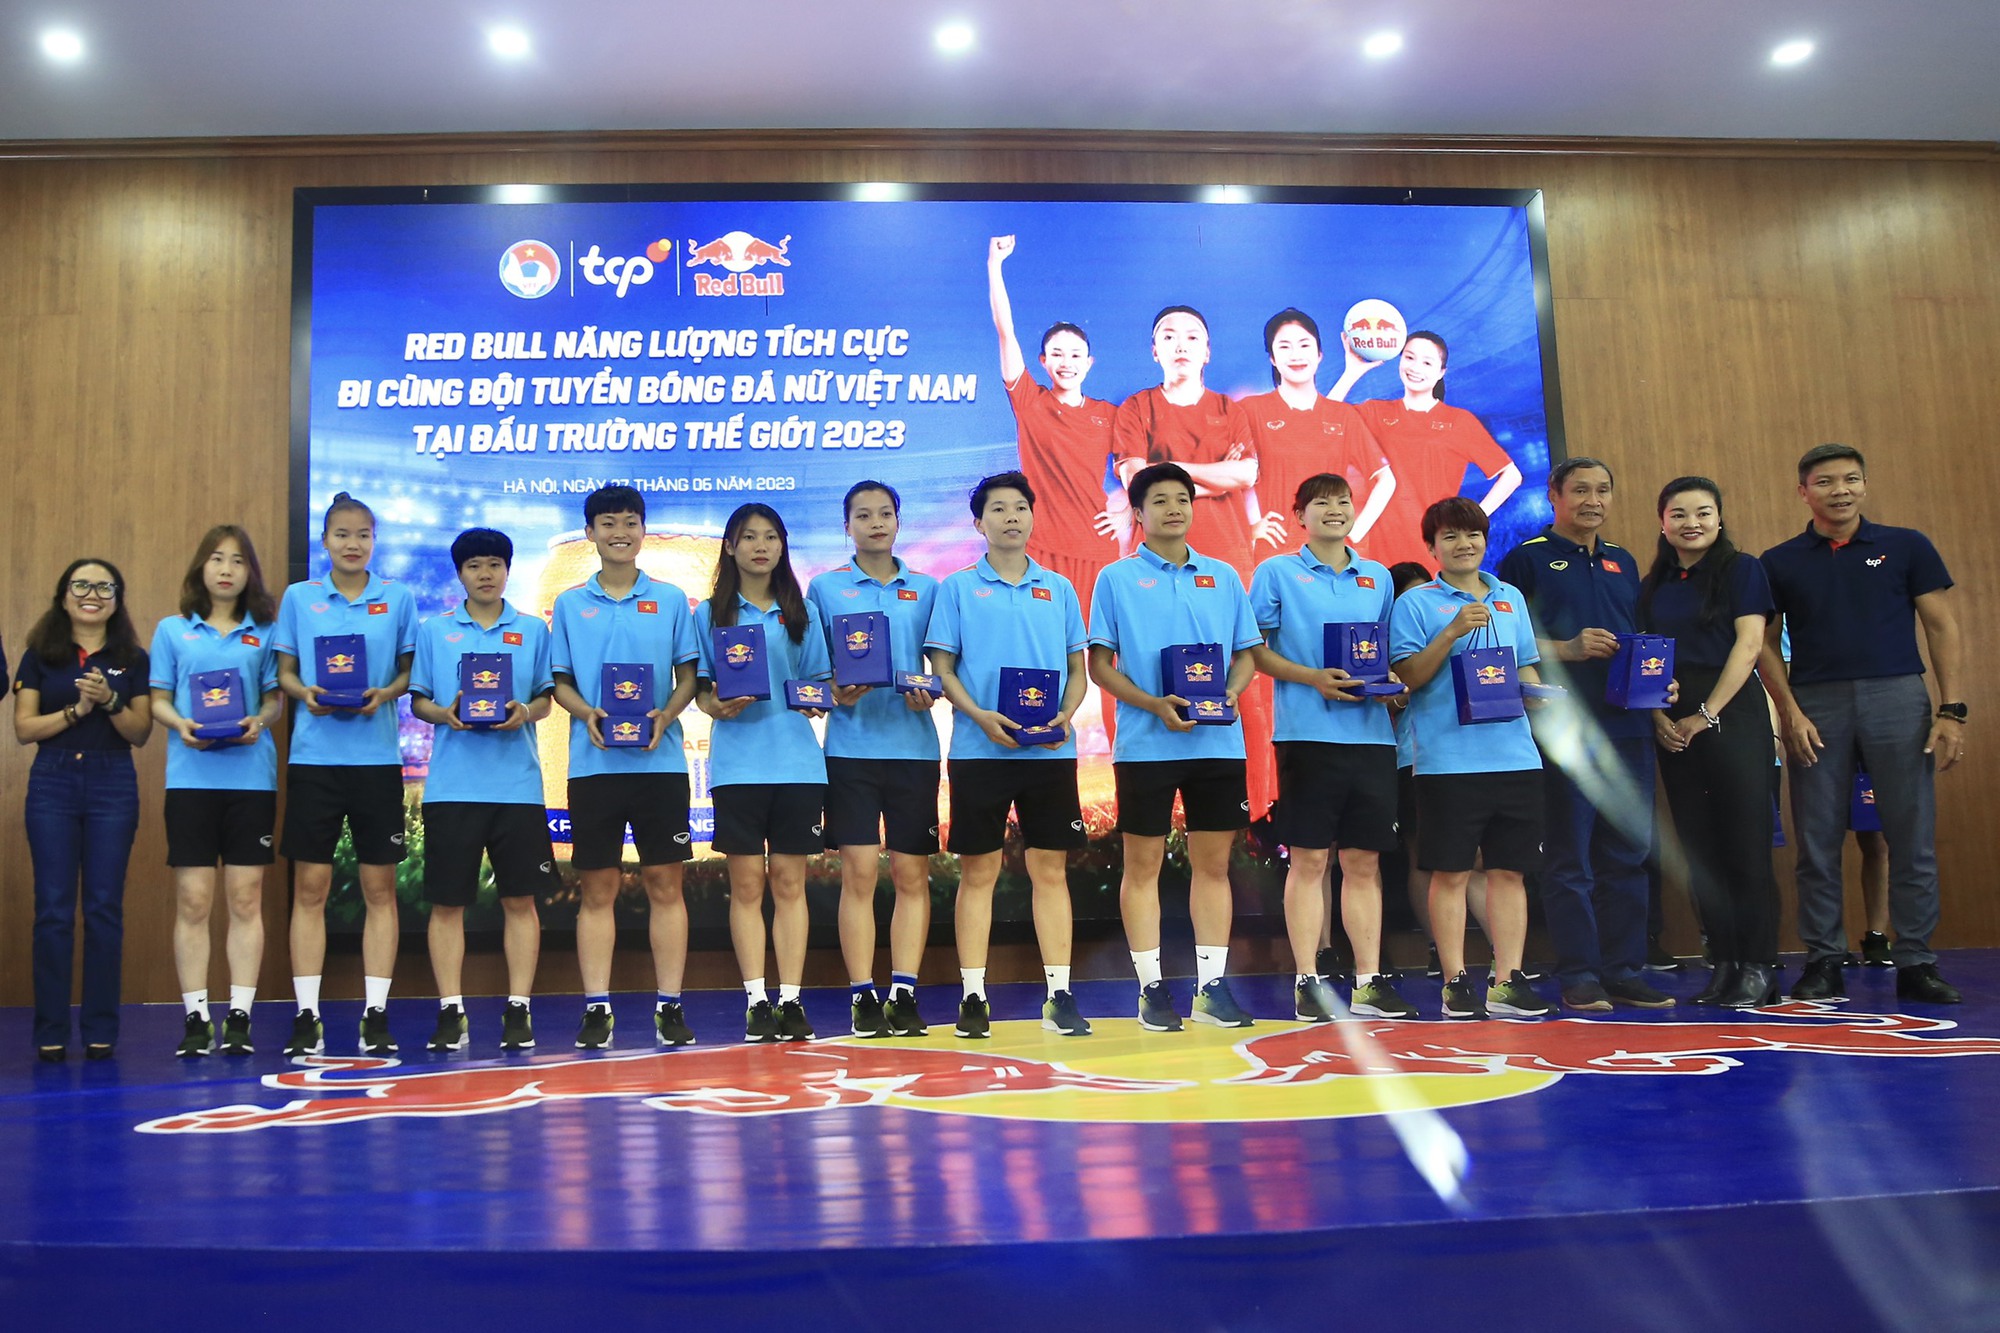 Đội tuyển nữ Việt Nam nhận thưởng đặc biệt trước World Cup 2023  - Ảnh 2.